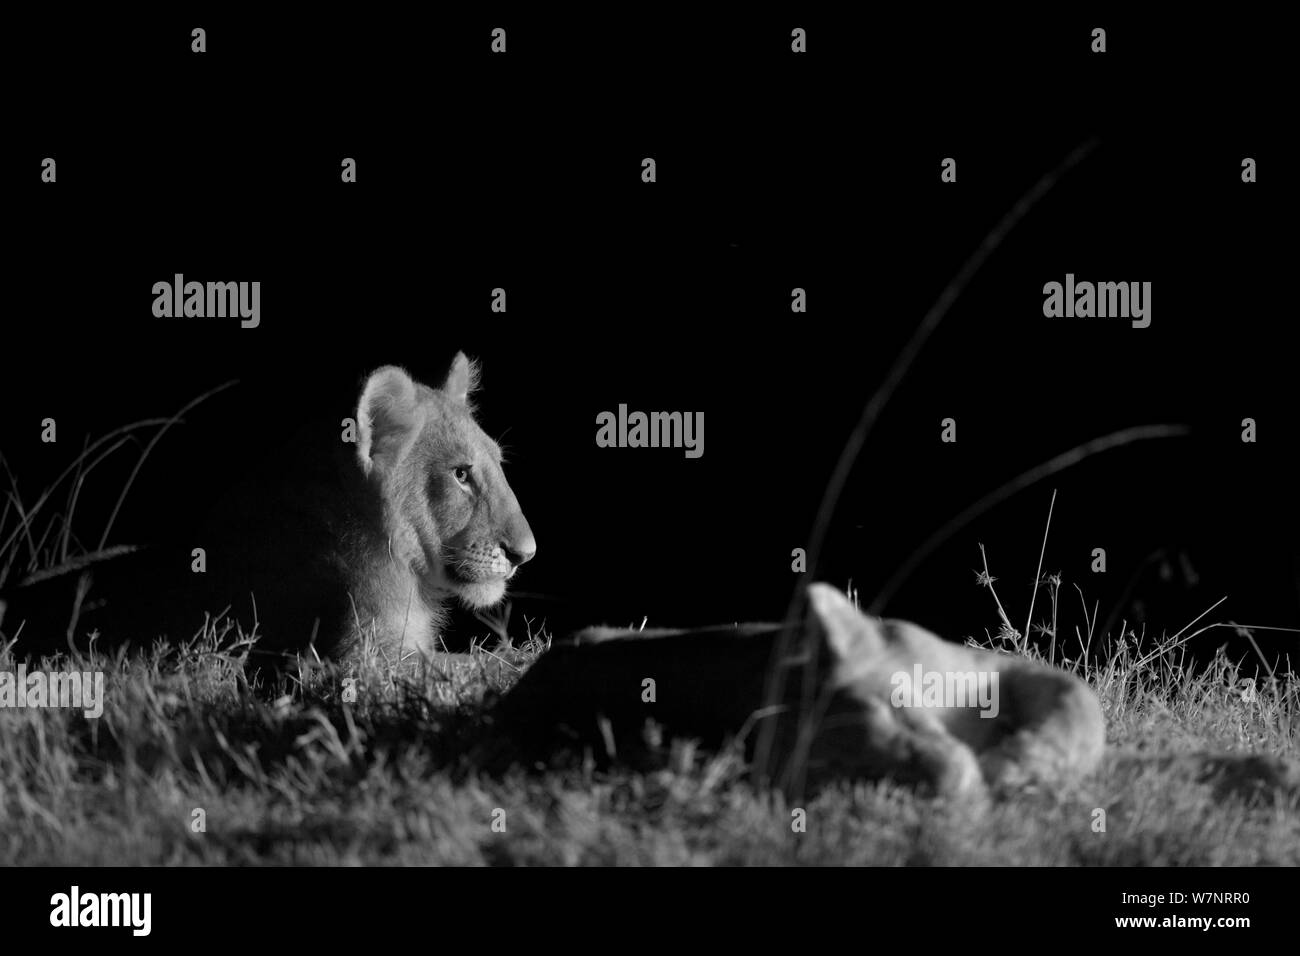 Marsh pride des lionceaux de la fierté des marais (Panthera leo) sur une nuit sans lune, Masai Mara, Kenya, prises avec caméra infra rouge, Septembre Banque D'Images